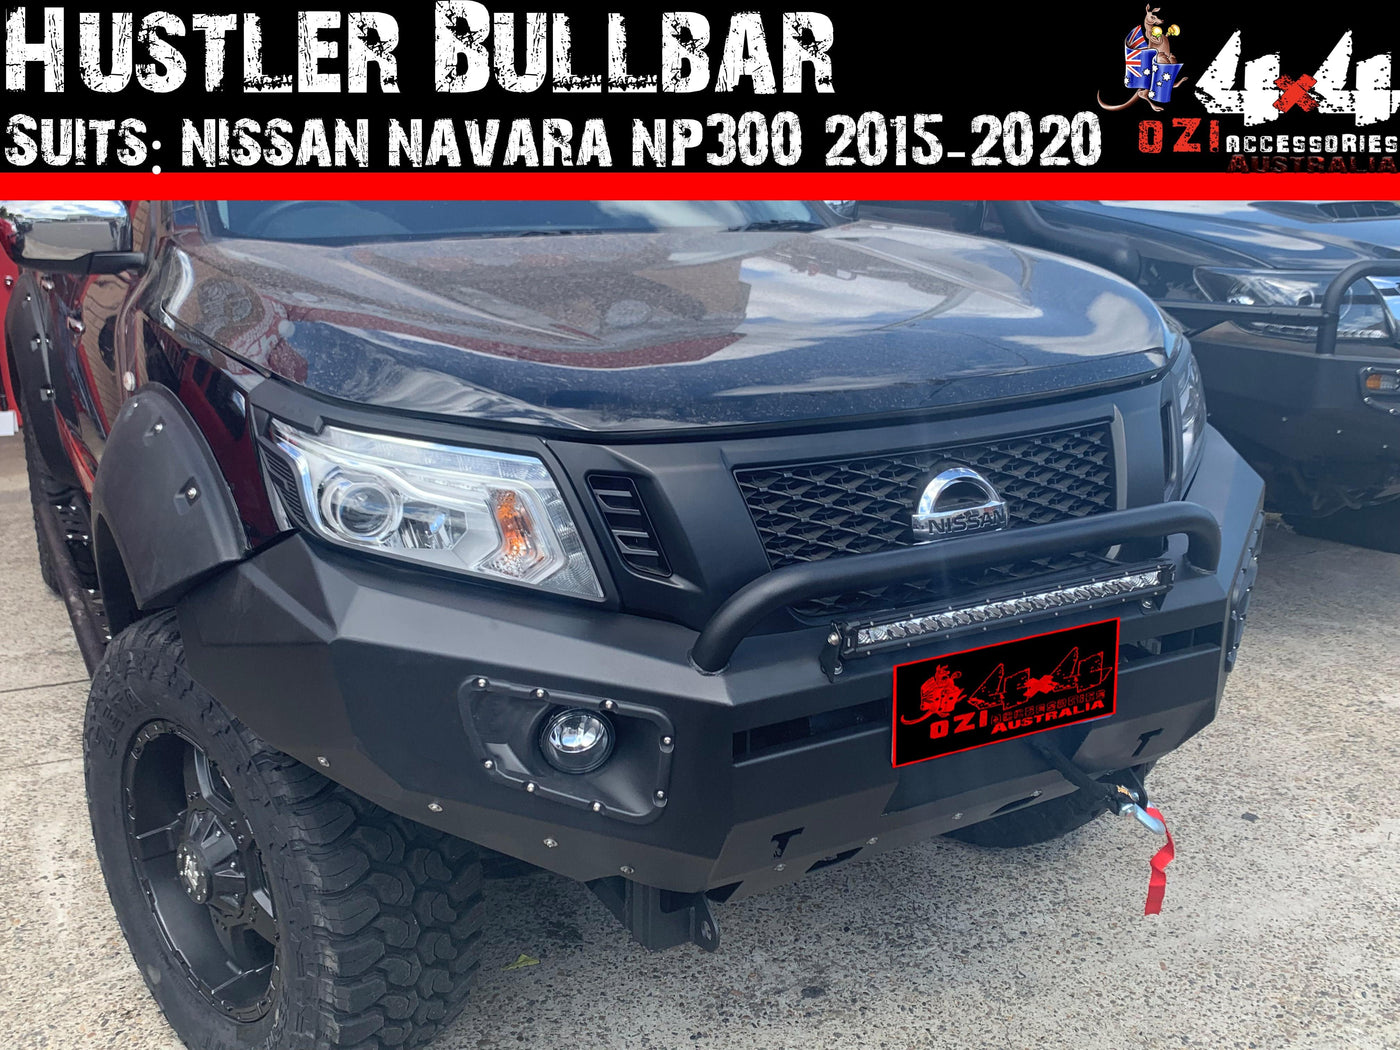 Hustler Bullbar Suits Nissan Navara NP300 2015-2020